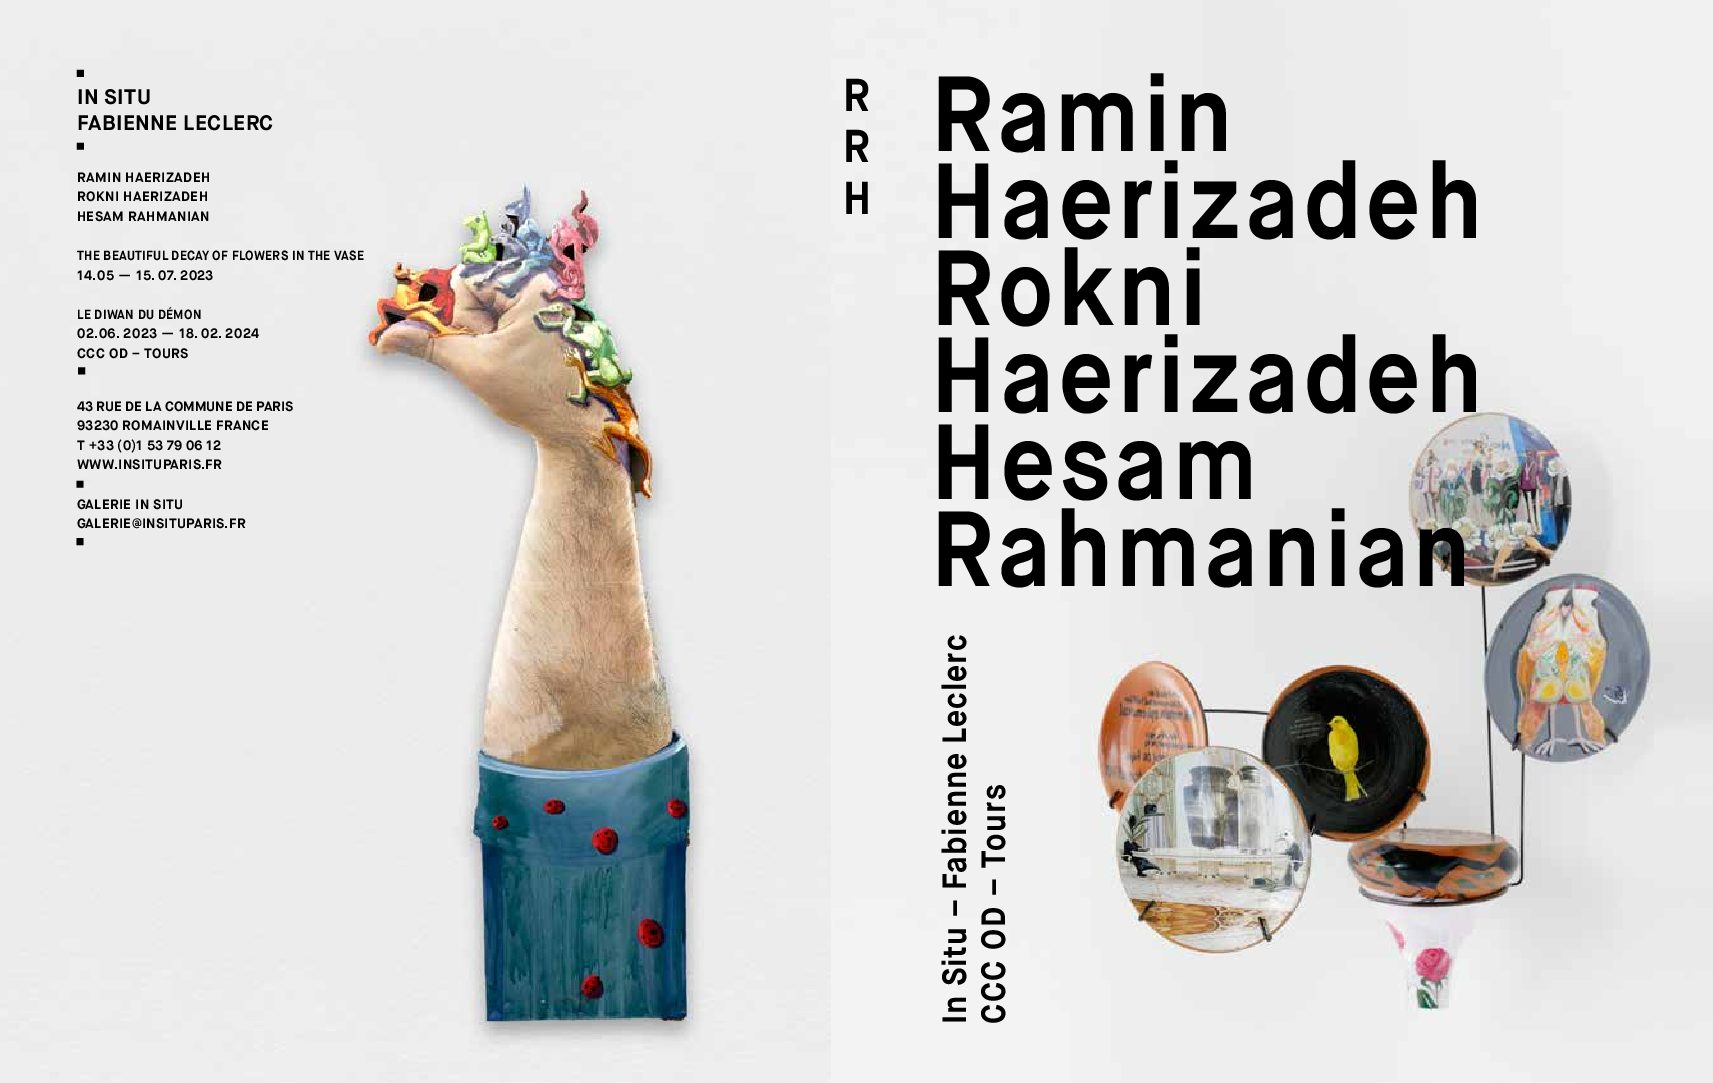 « Ramin Haerizadeh, Rokni Haerizadeh, Hesam Rahmanian, Portrit de groupe en costume, ou l’art de la décomposition »